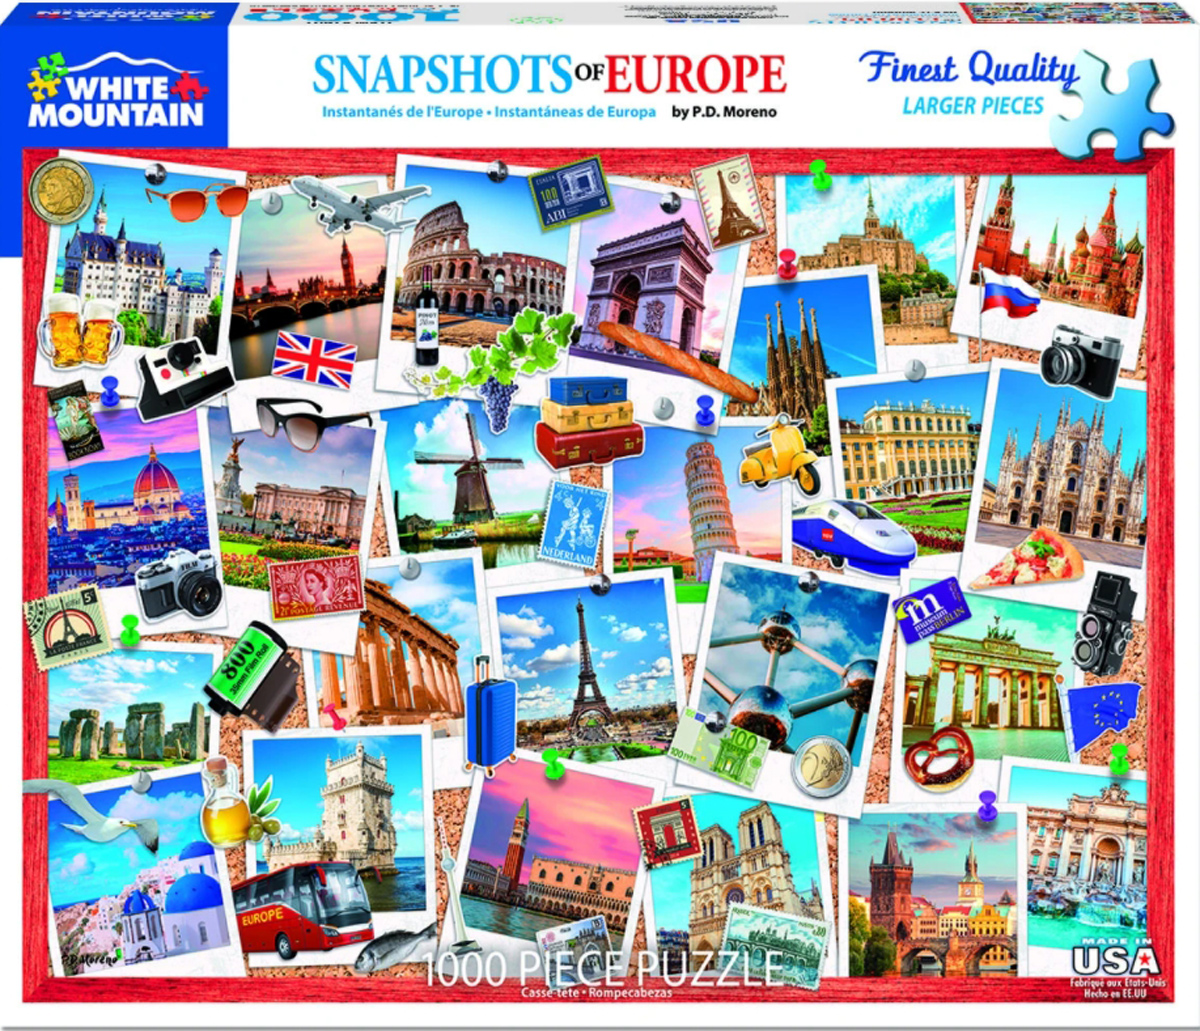 Snapshots of Europe